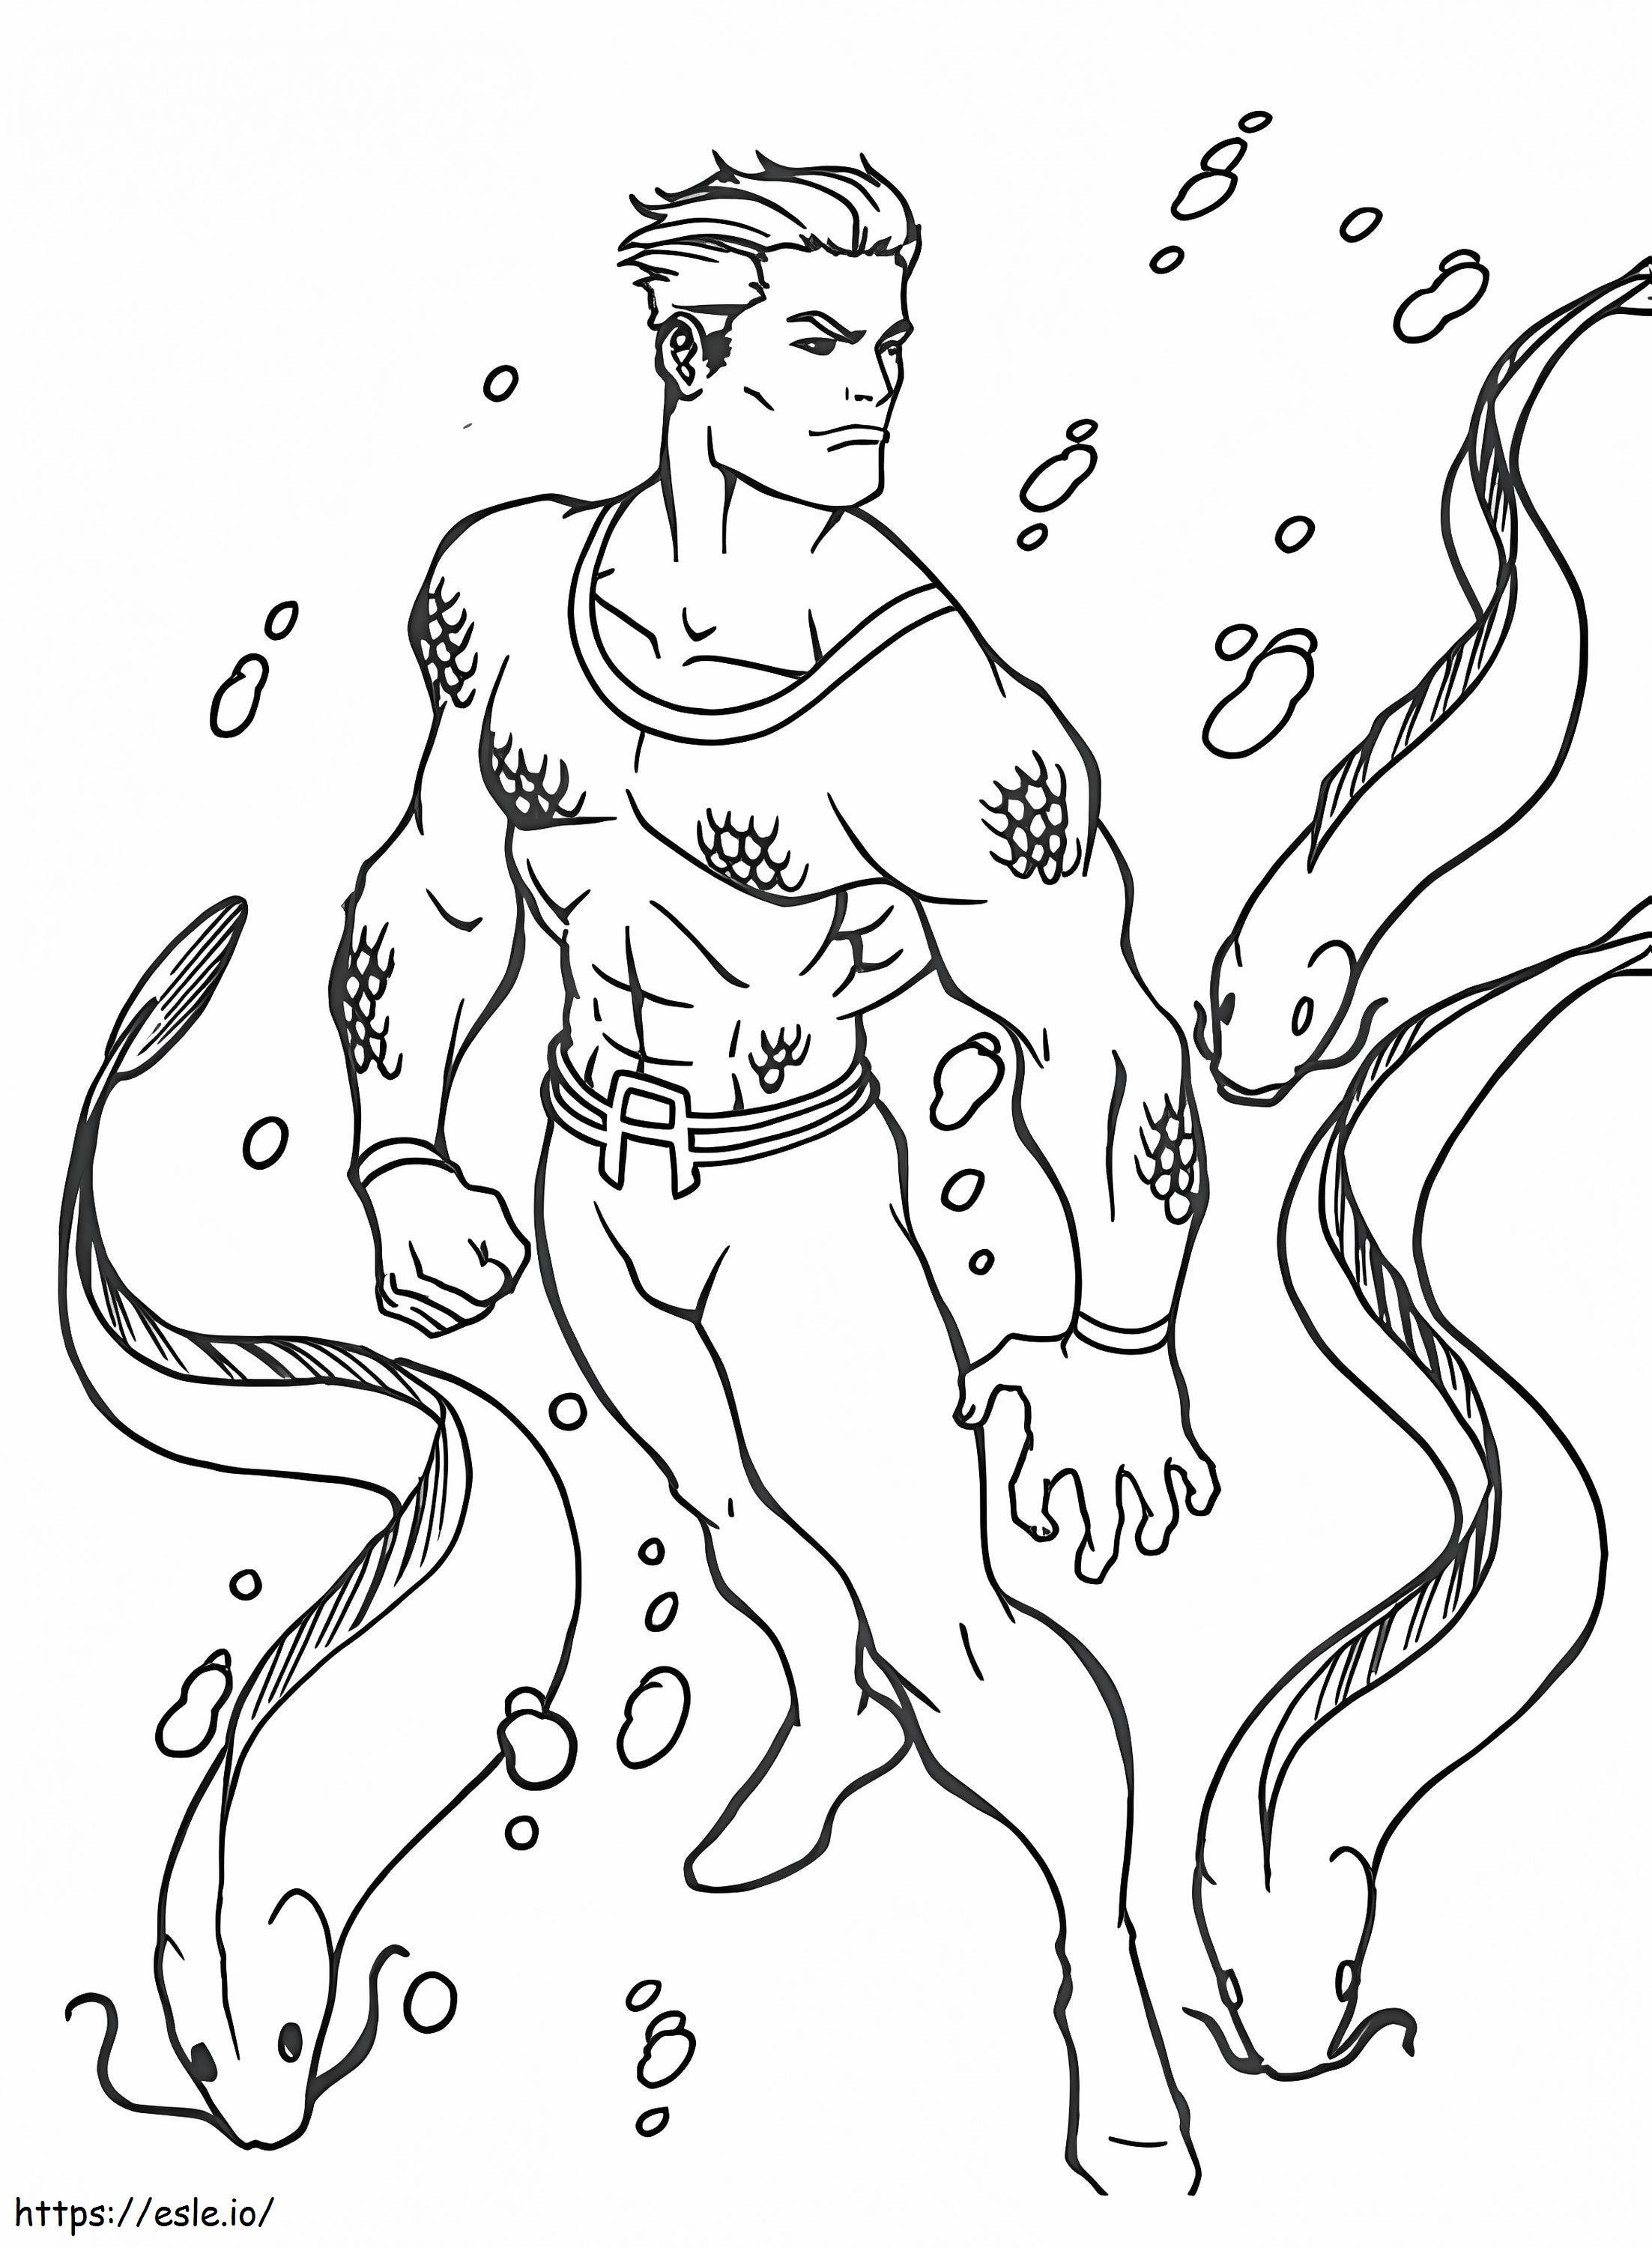 Muhteşem Aquaman boyama